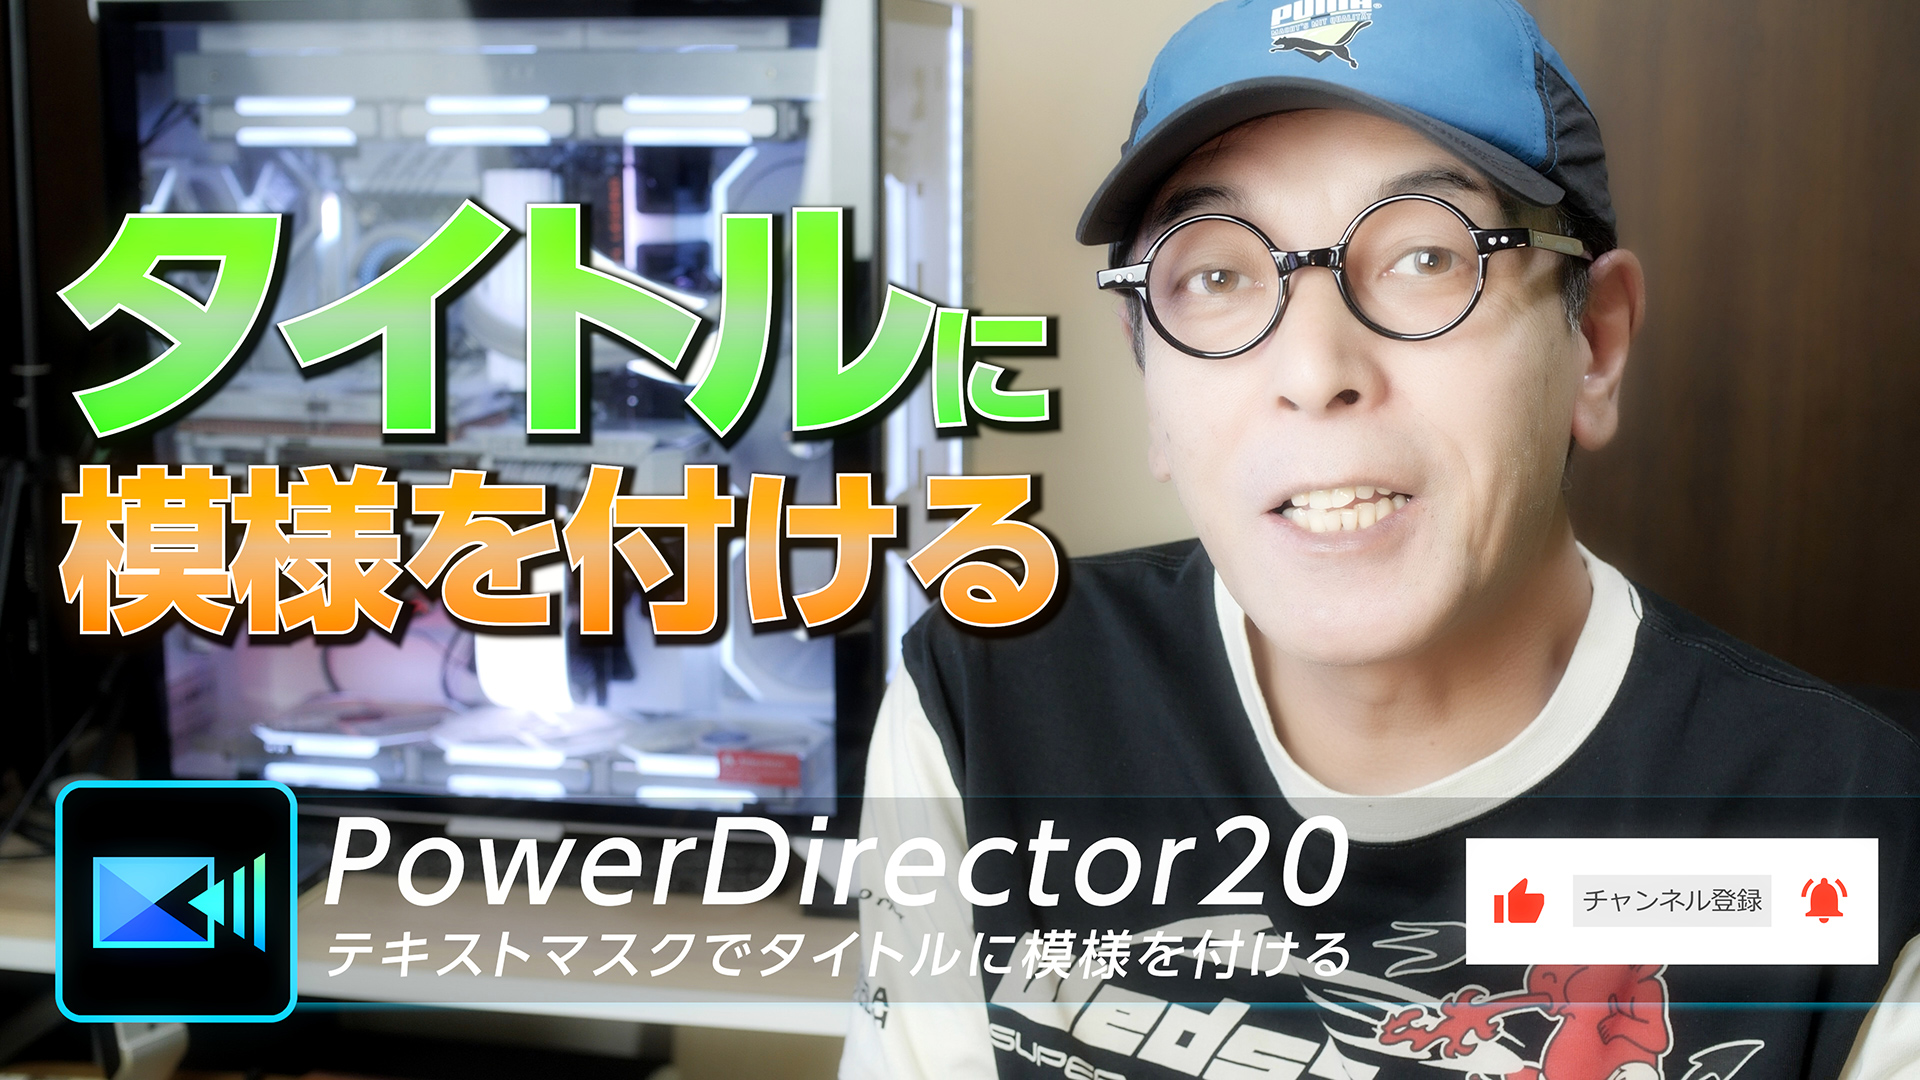 タイトルに模様を付ける - PowerDirector20 テキストマスク - 大学35年生の動画編集教室